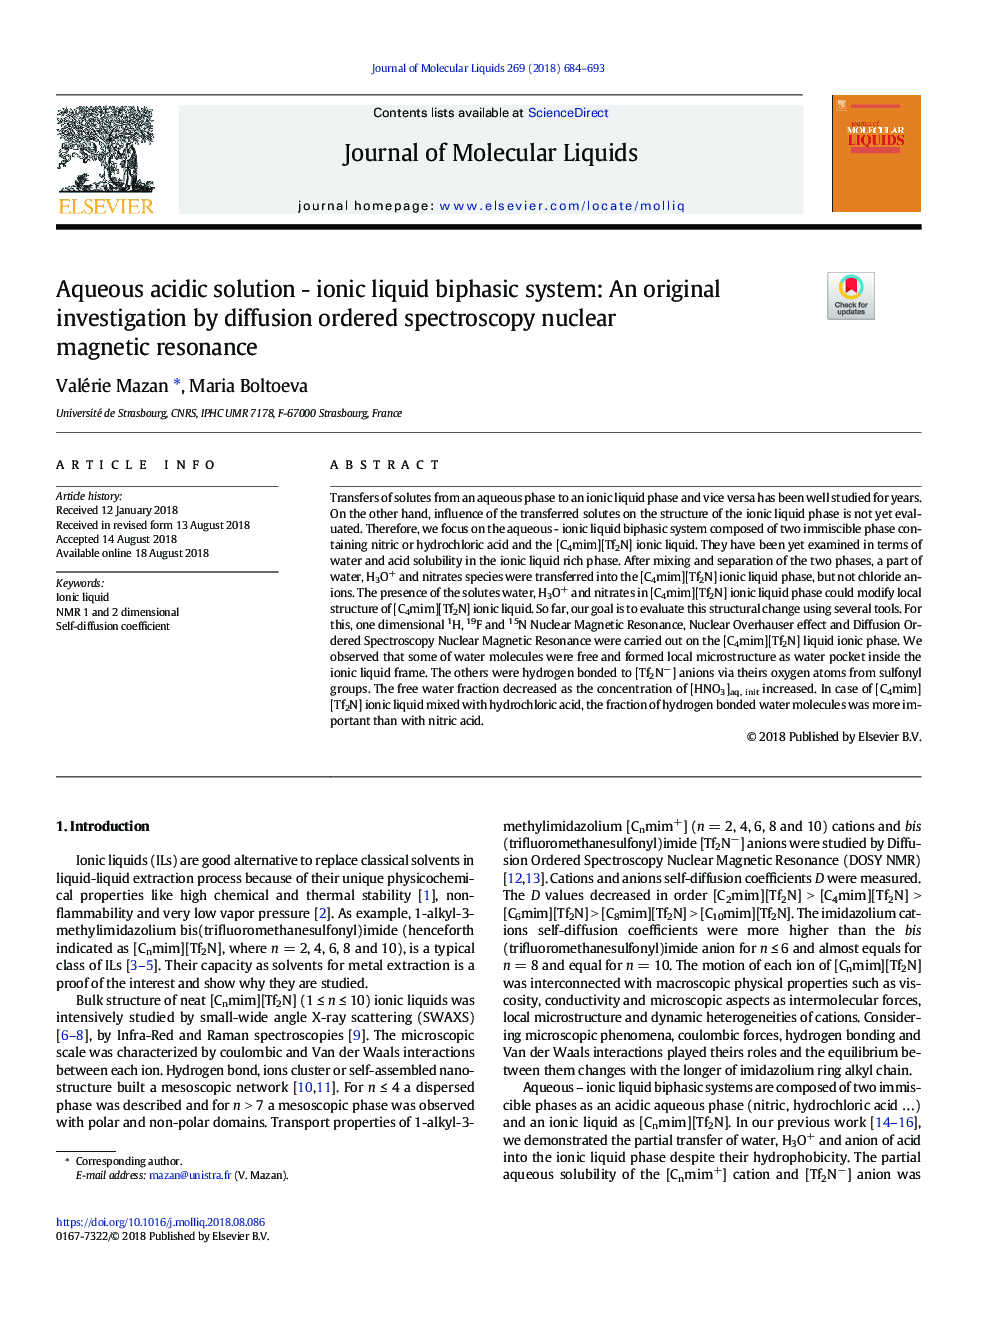 محلول اسیدی آبی - سیستم دوزیستی مایع یونی: تحقیق اصلی توسط اسپکتروسکوپی منظم منتشر شده رزونانس مغناطیسی هسته ای